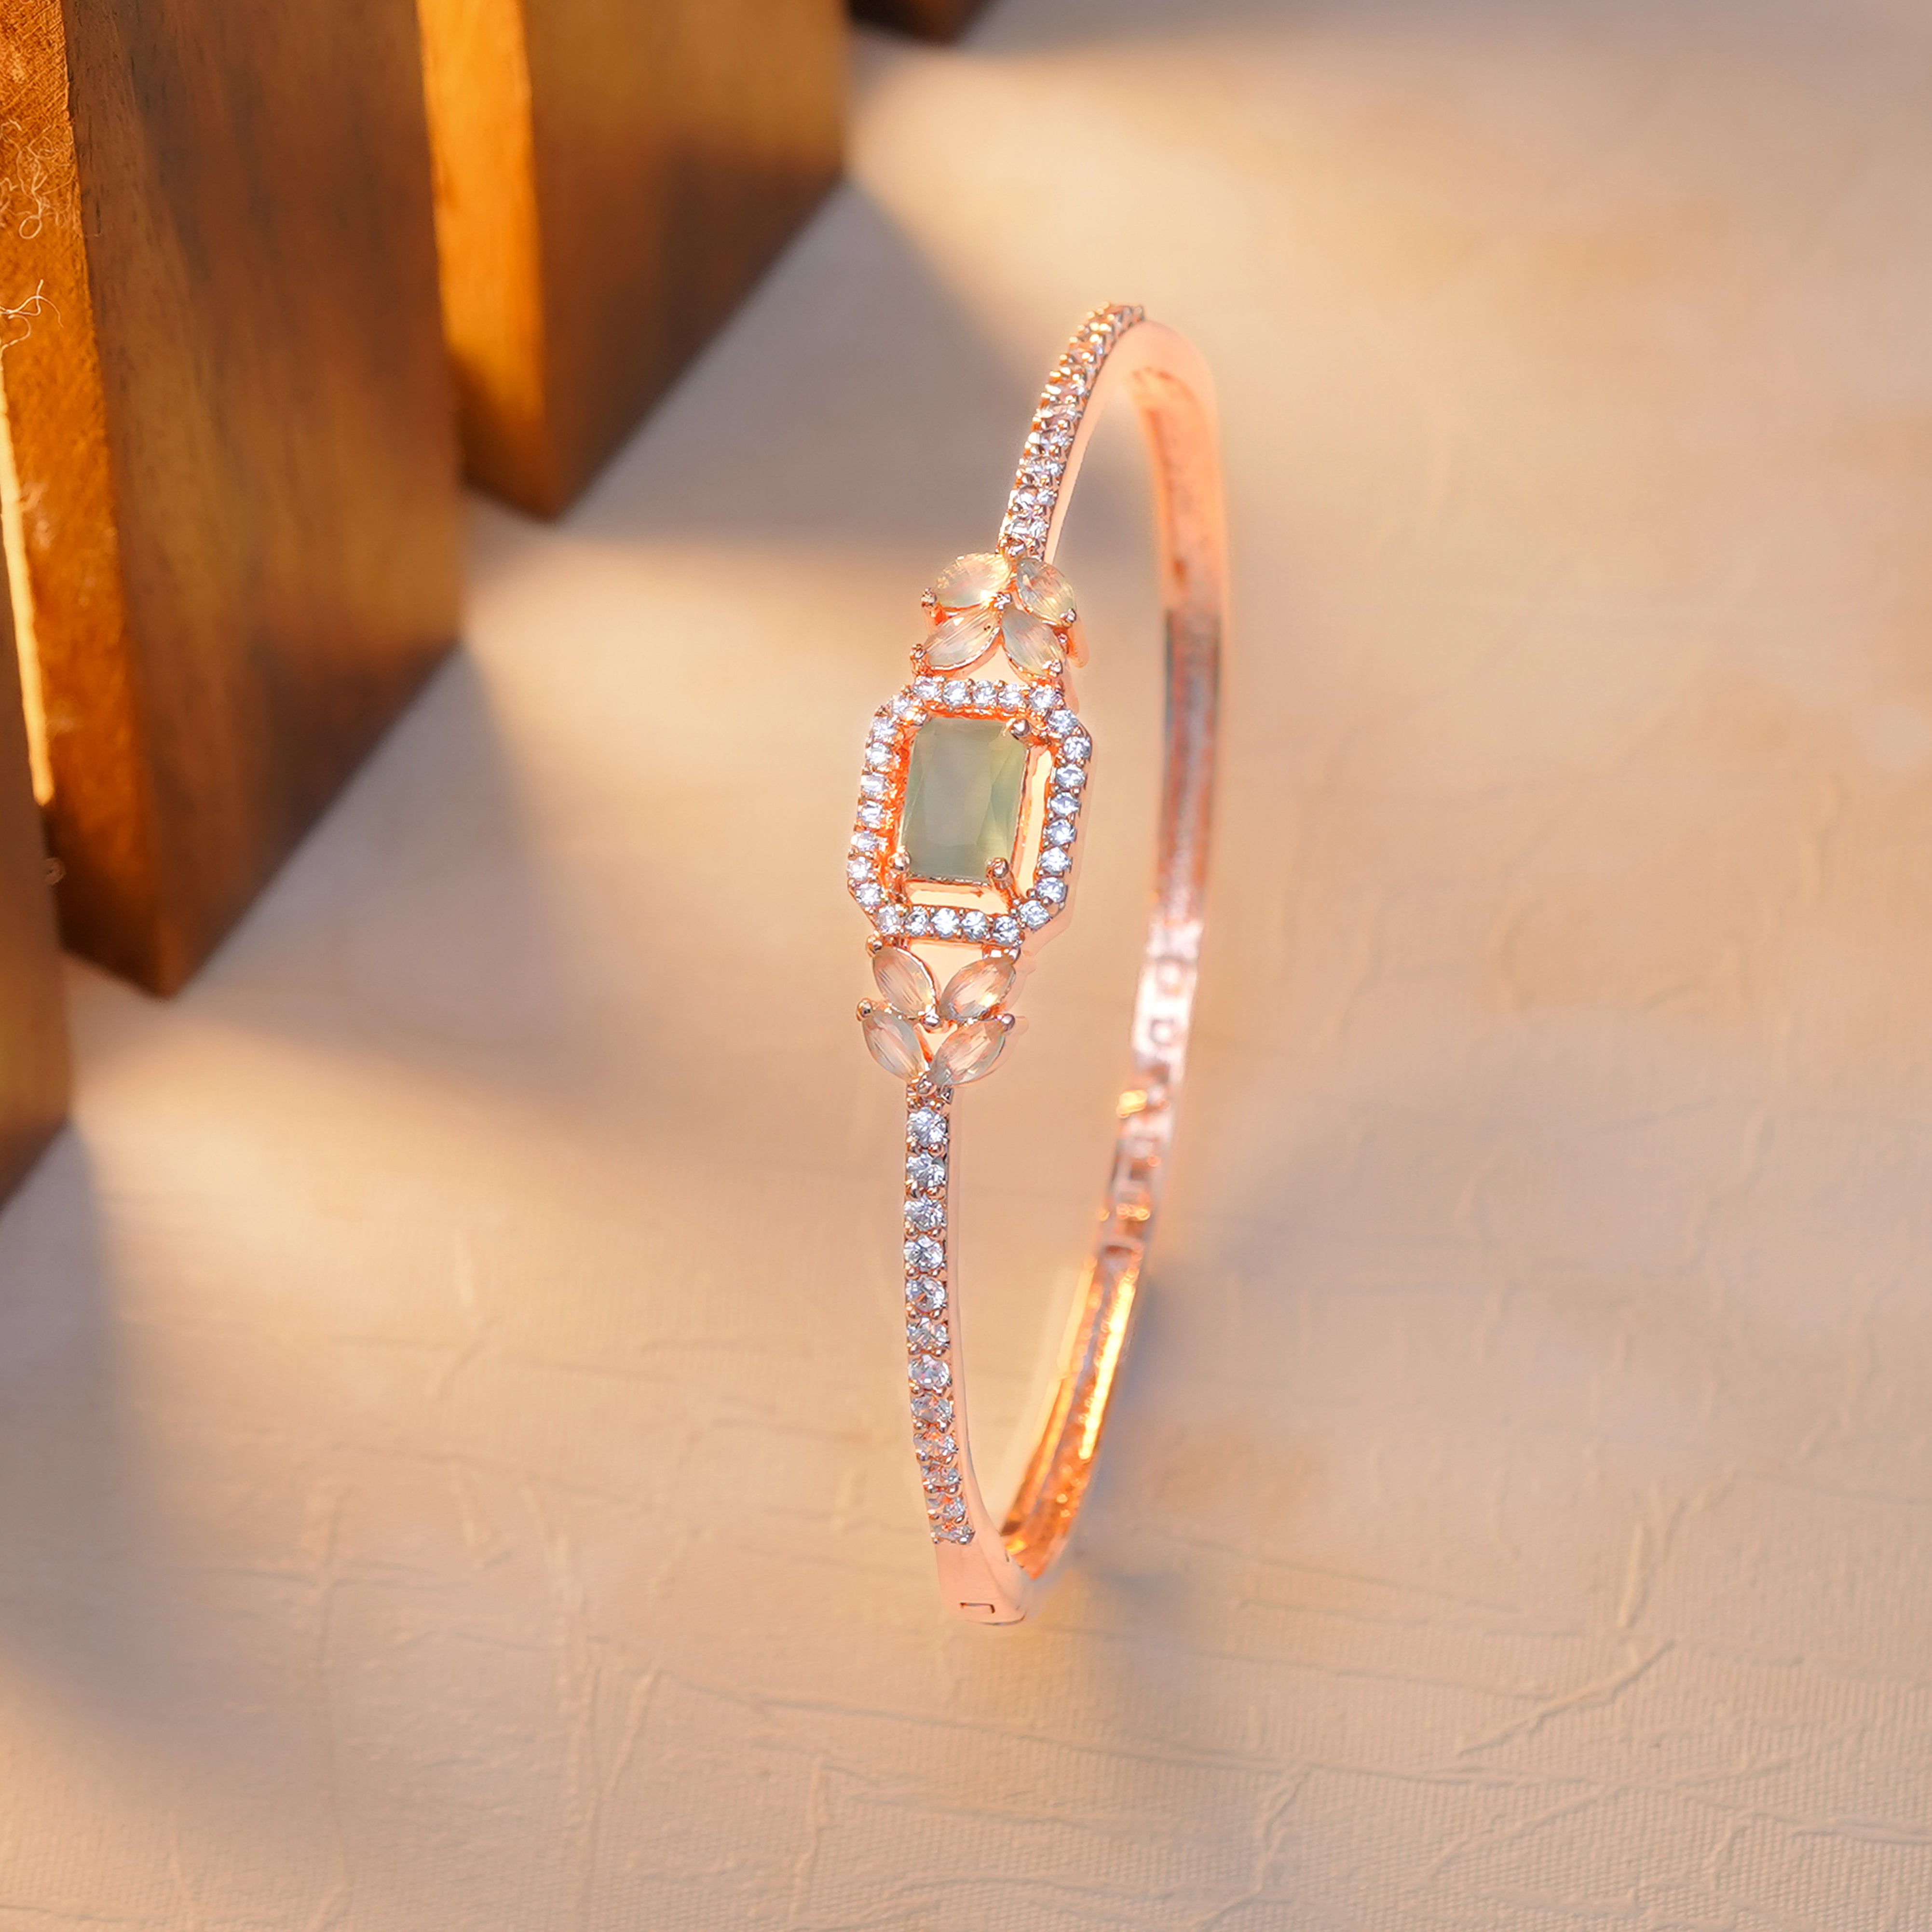 Regal Radiance Diamond Studded Bracelet